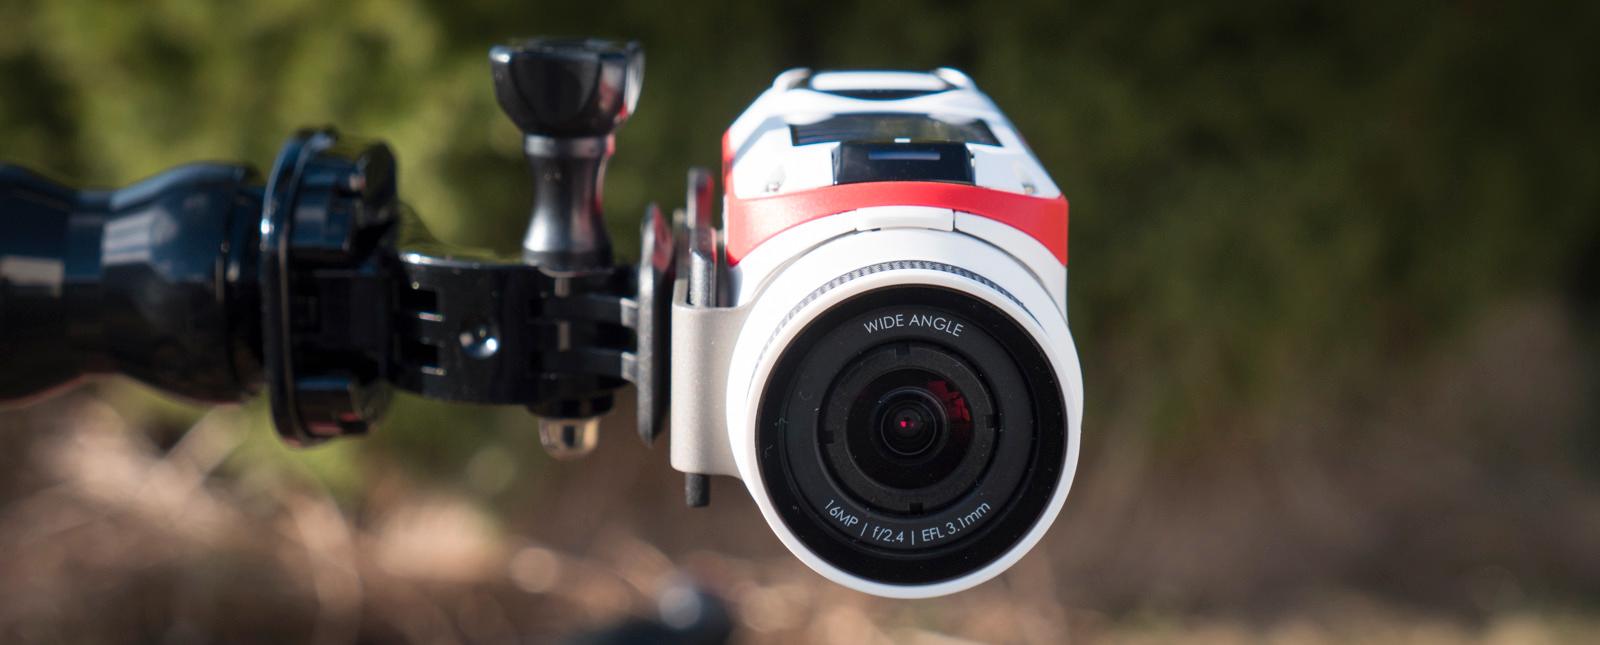 Kameraplaten kan dreies rundtselve kameraet, slik at det er enkelt å for eksempel montere det sidelengs.